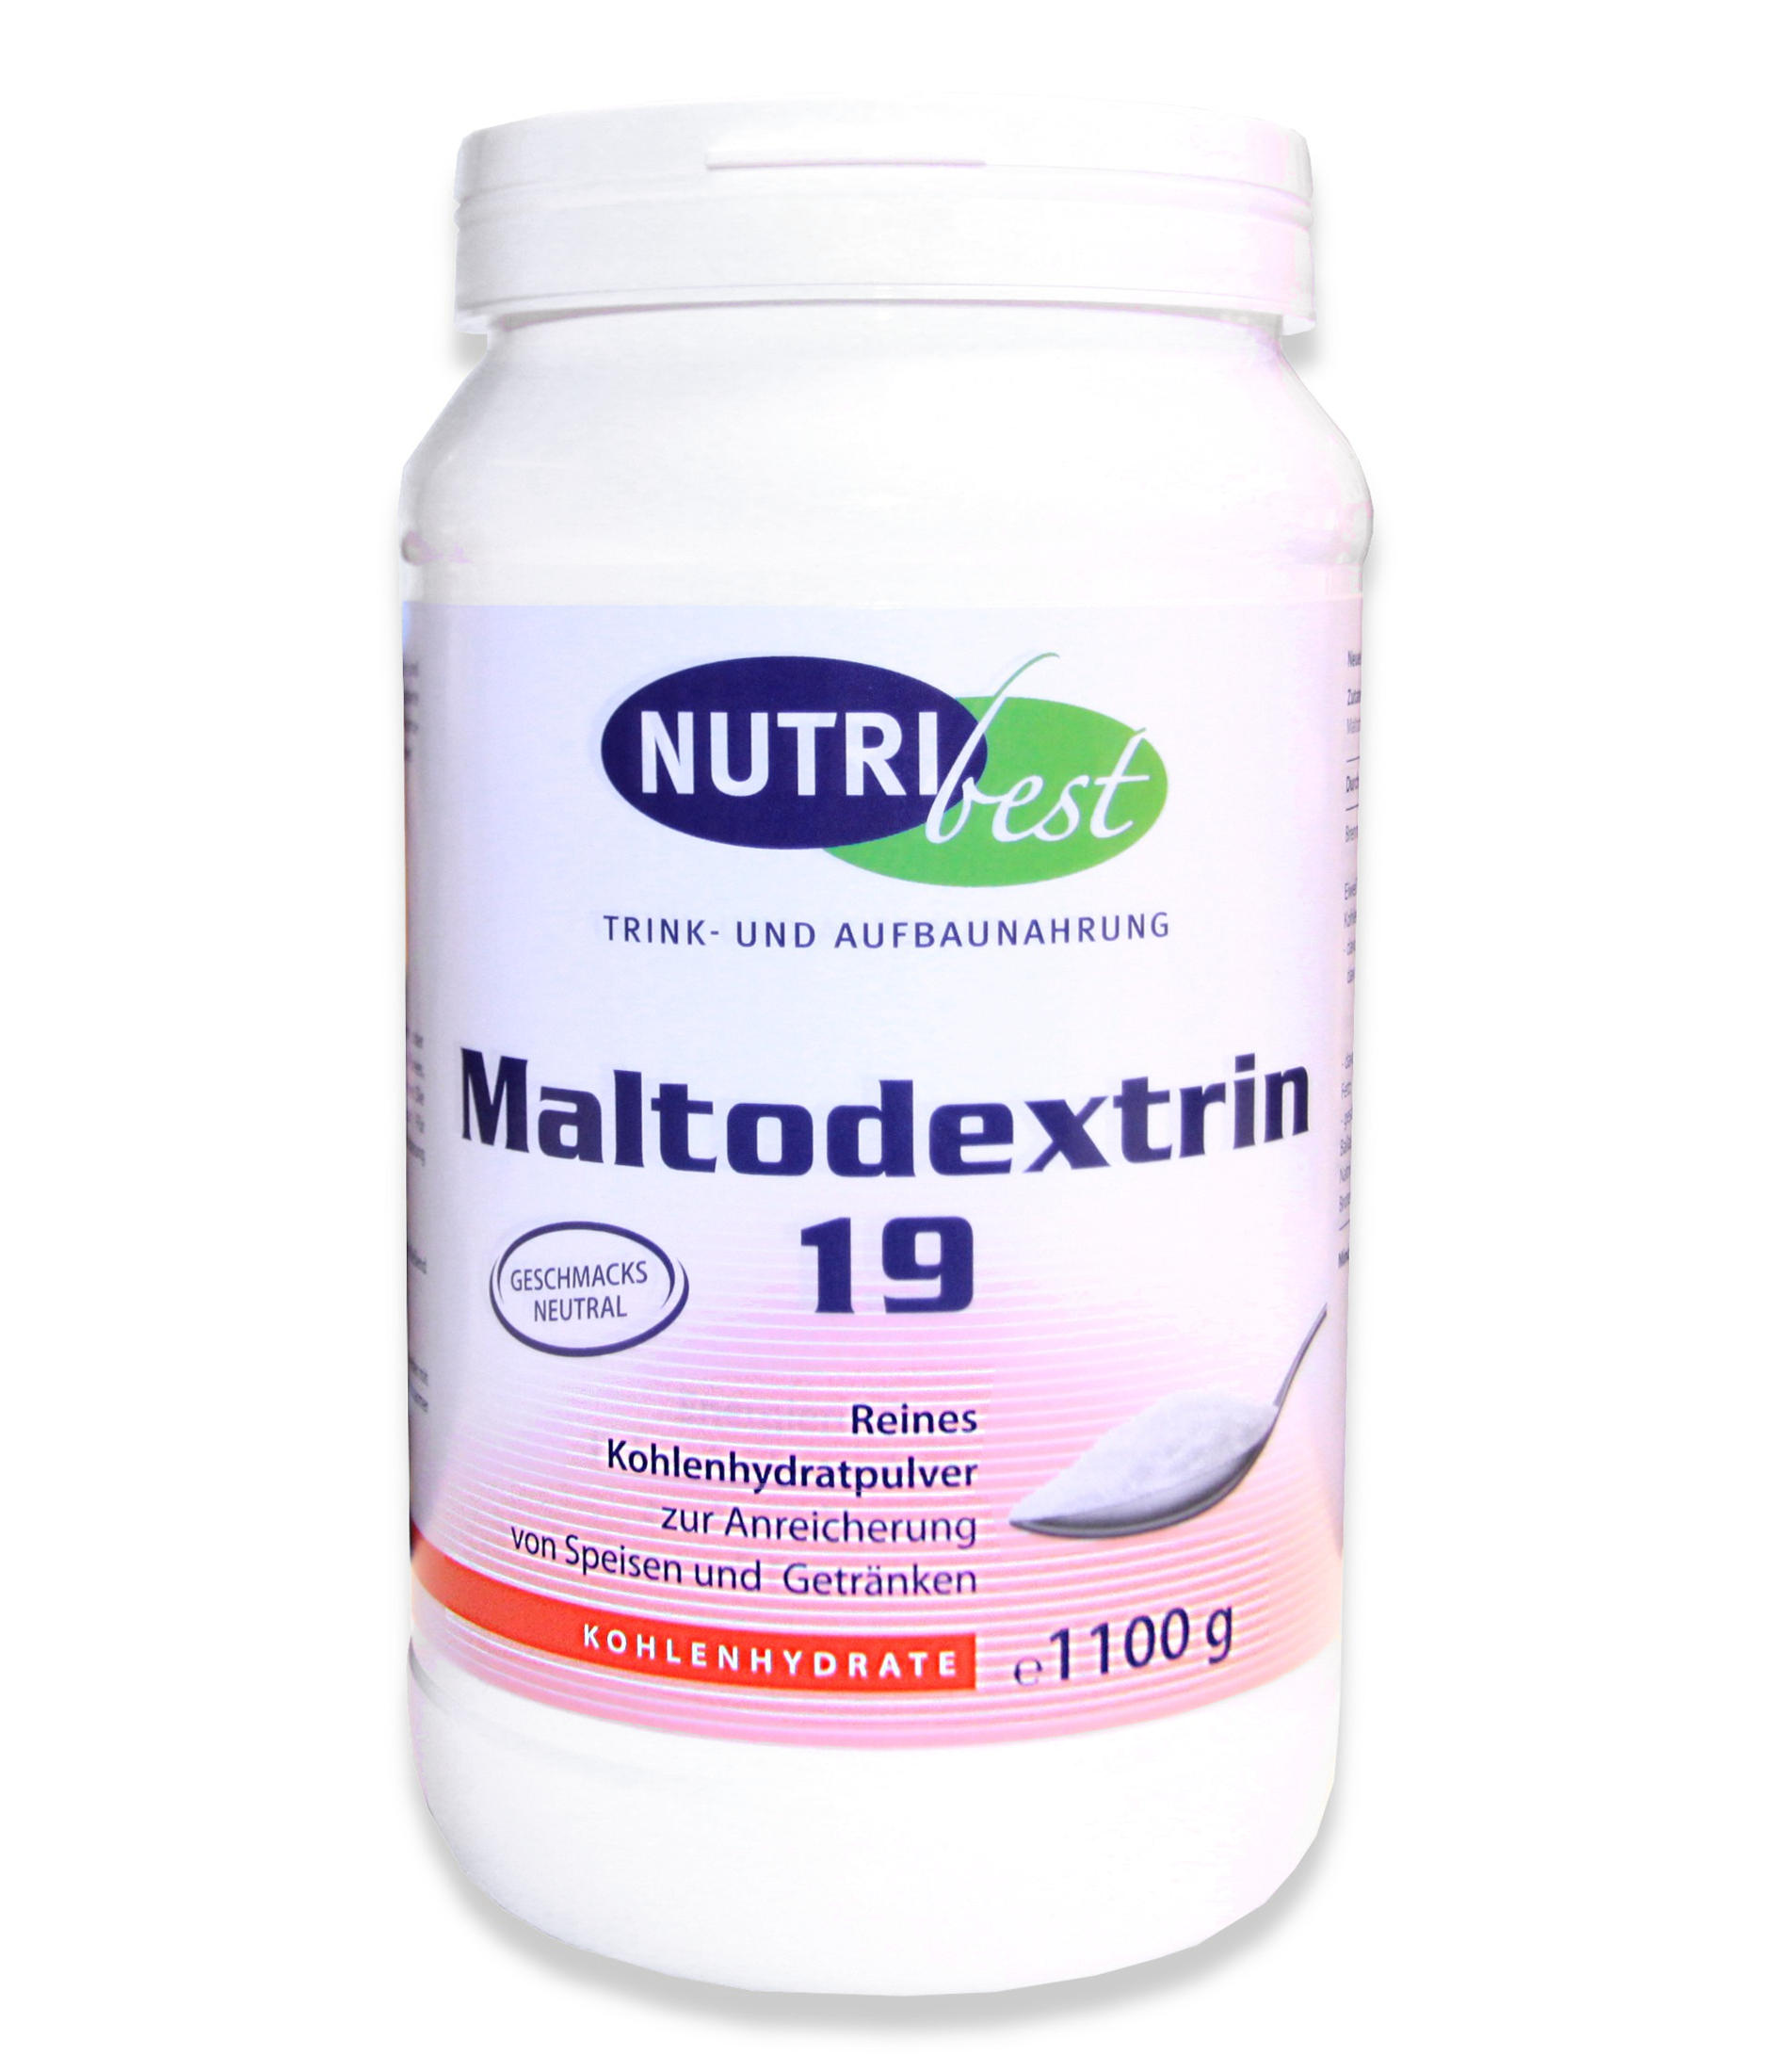 Abbildung einer Dose Nutribest Maltodextrin 1100 Gramm